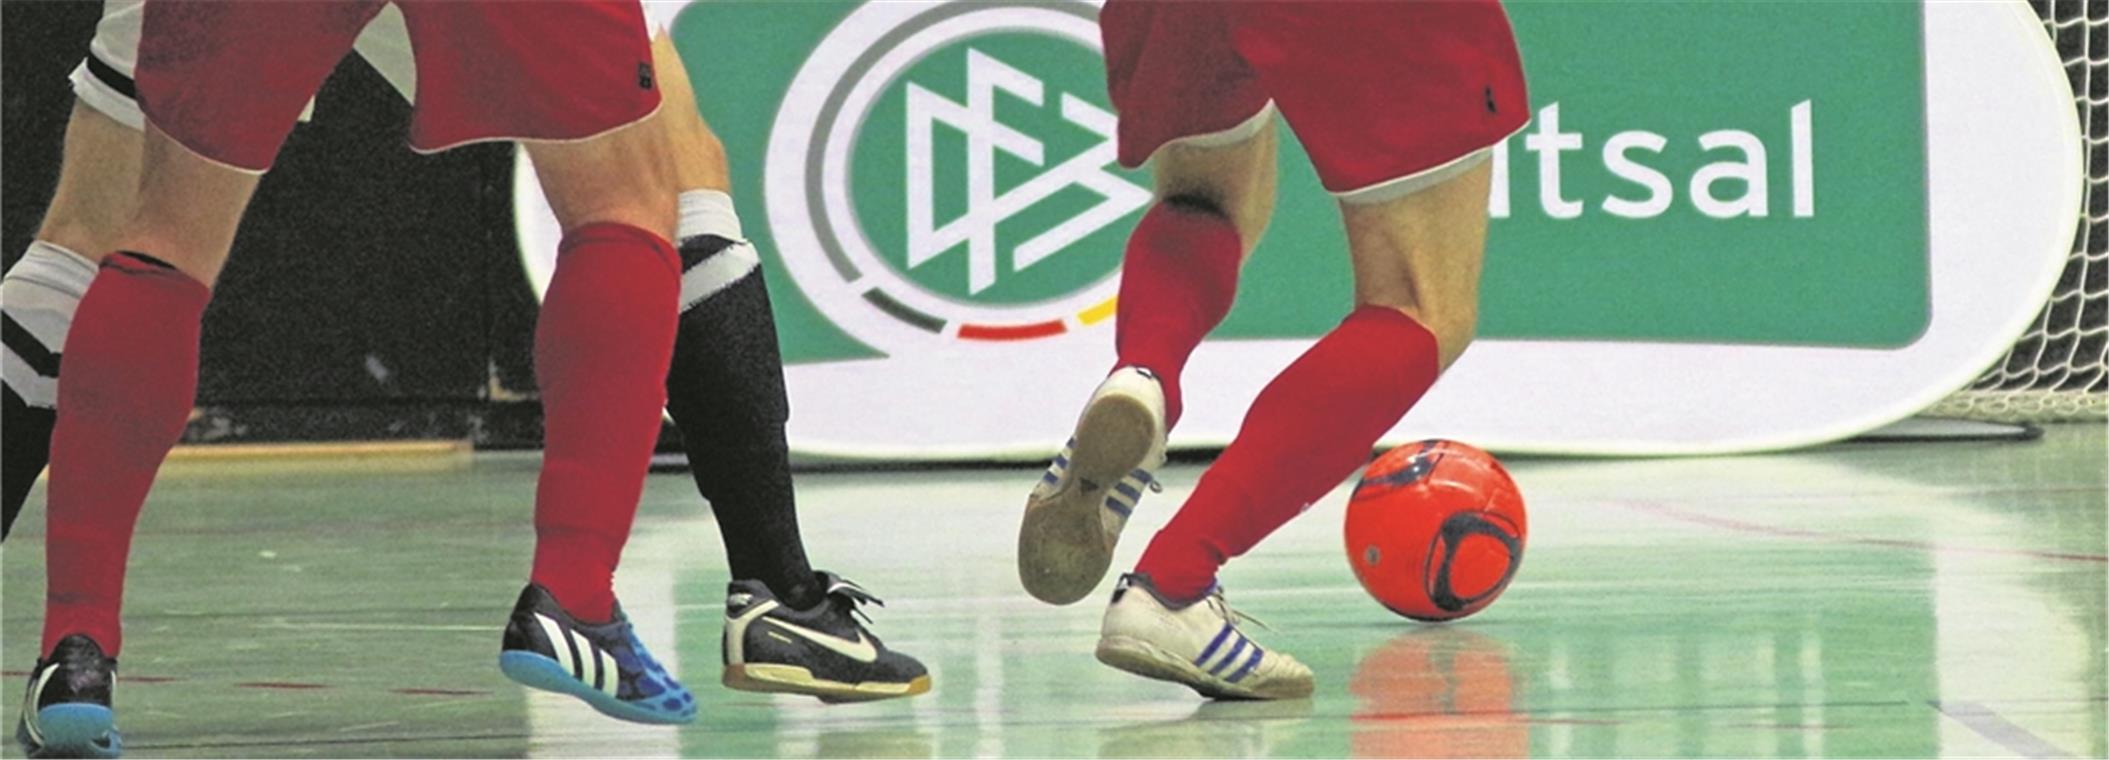 Temporeich und ideal für technisch gute Kicker: Futsal, die neue Art des Hallenfußballs. Deutschlands beste Spieler sind demnächst in Stuttgart beim Länderspiel gegen die Schweiz am Ball. Foto: Imago